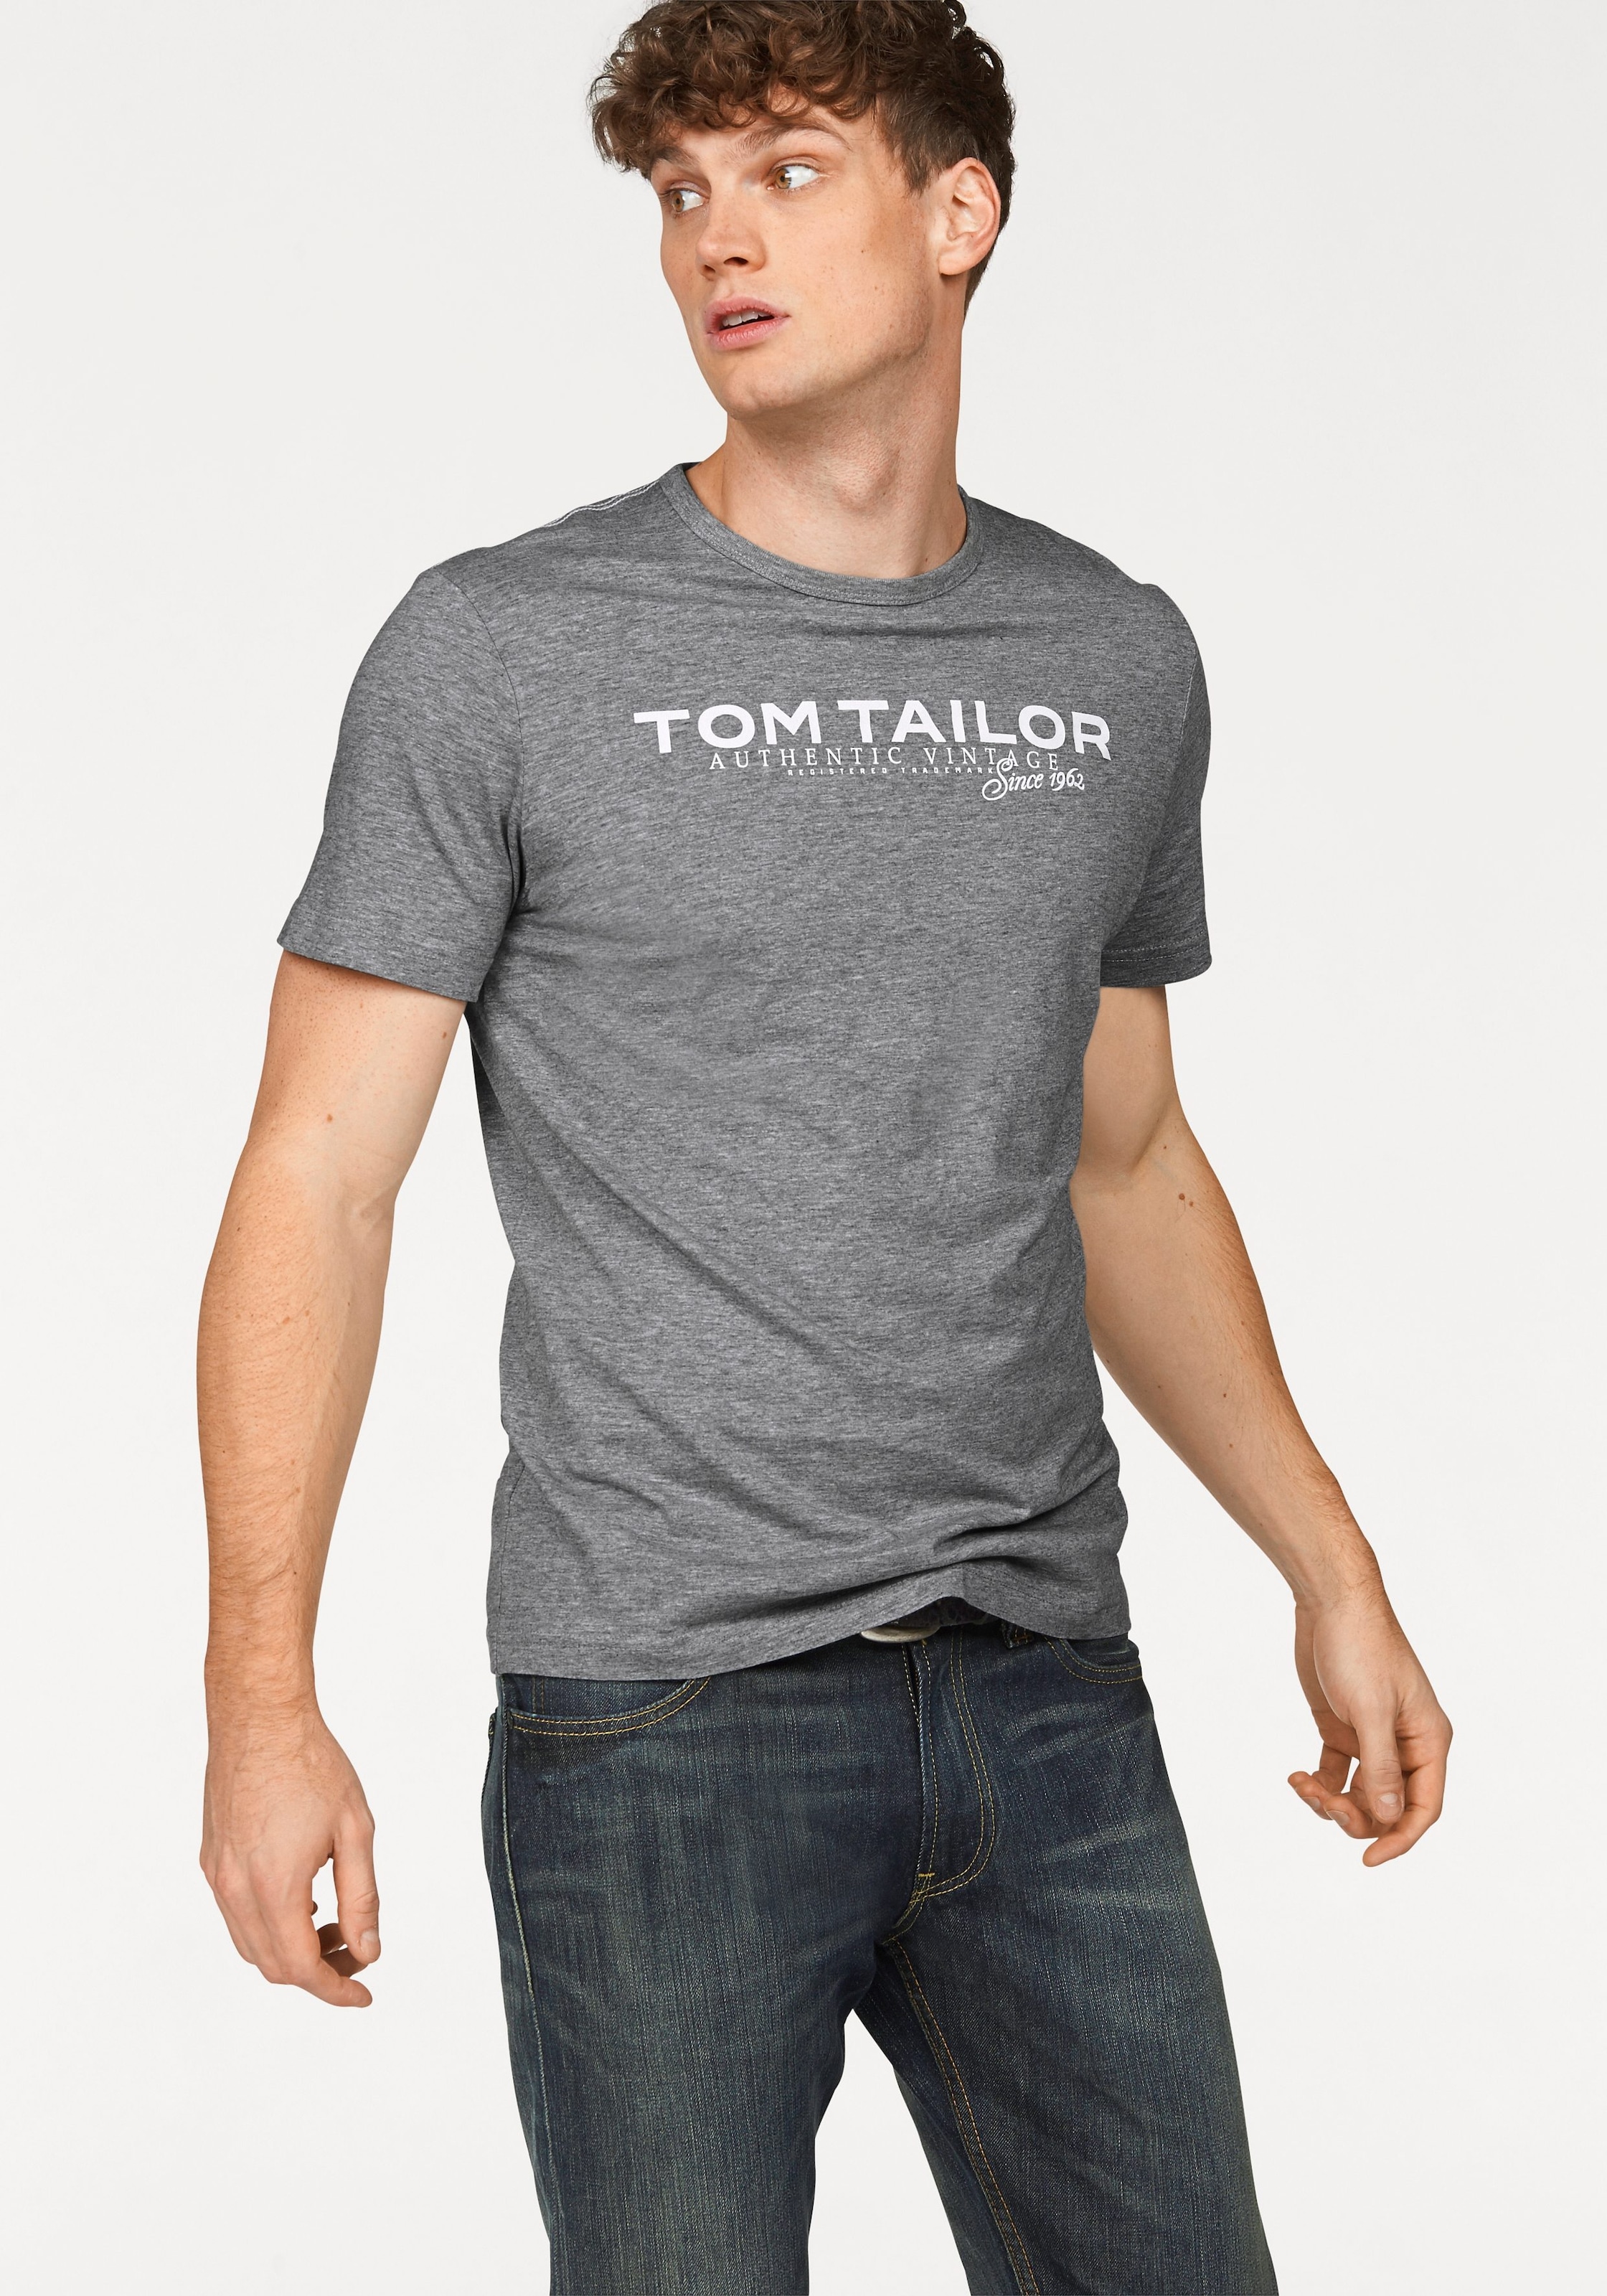 Том тейлор каталог товаров. Tom Tailor майка. Tom Tailor Shirt. Tom Tailor CA 60079. Tom Tailor CA 66672.